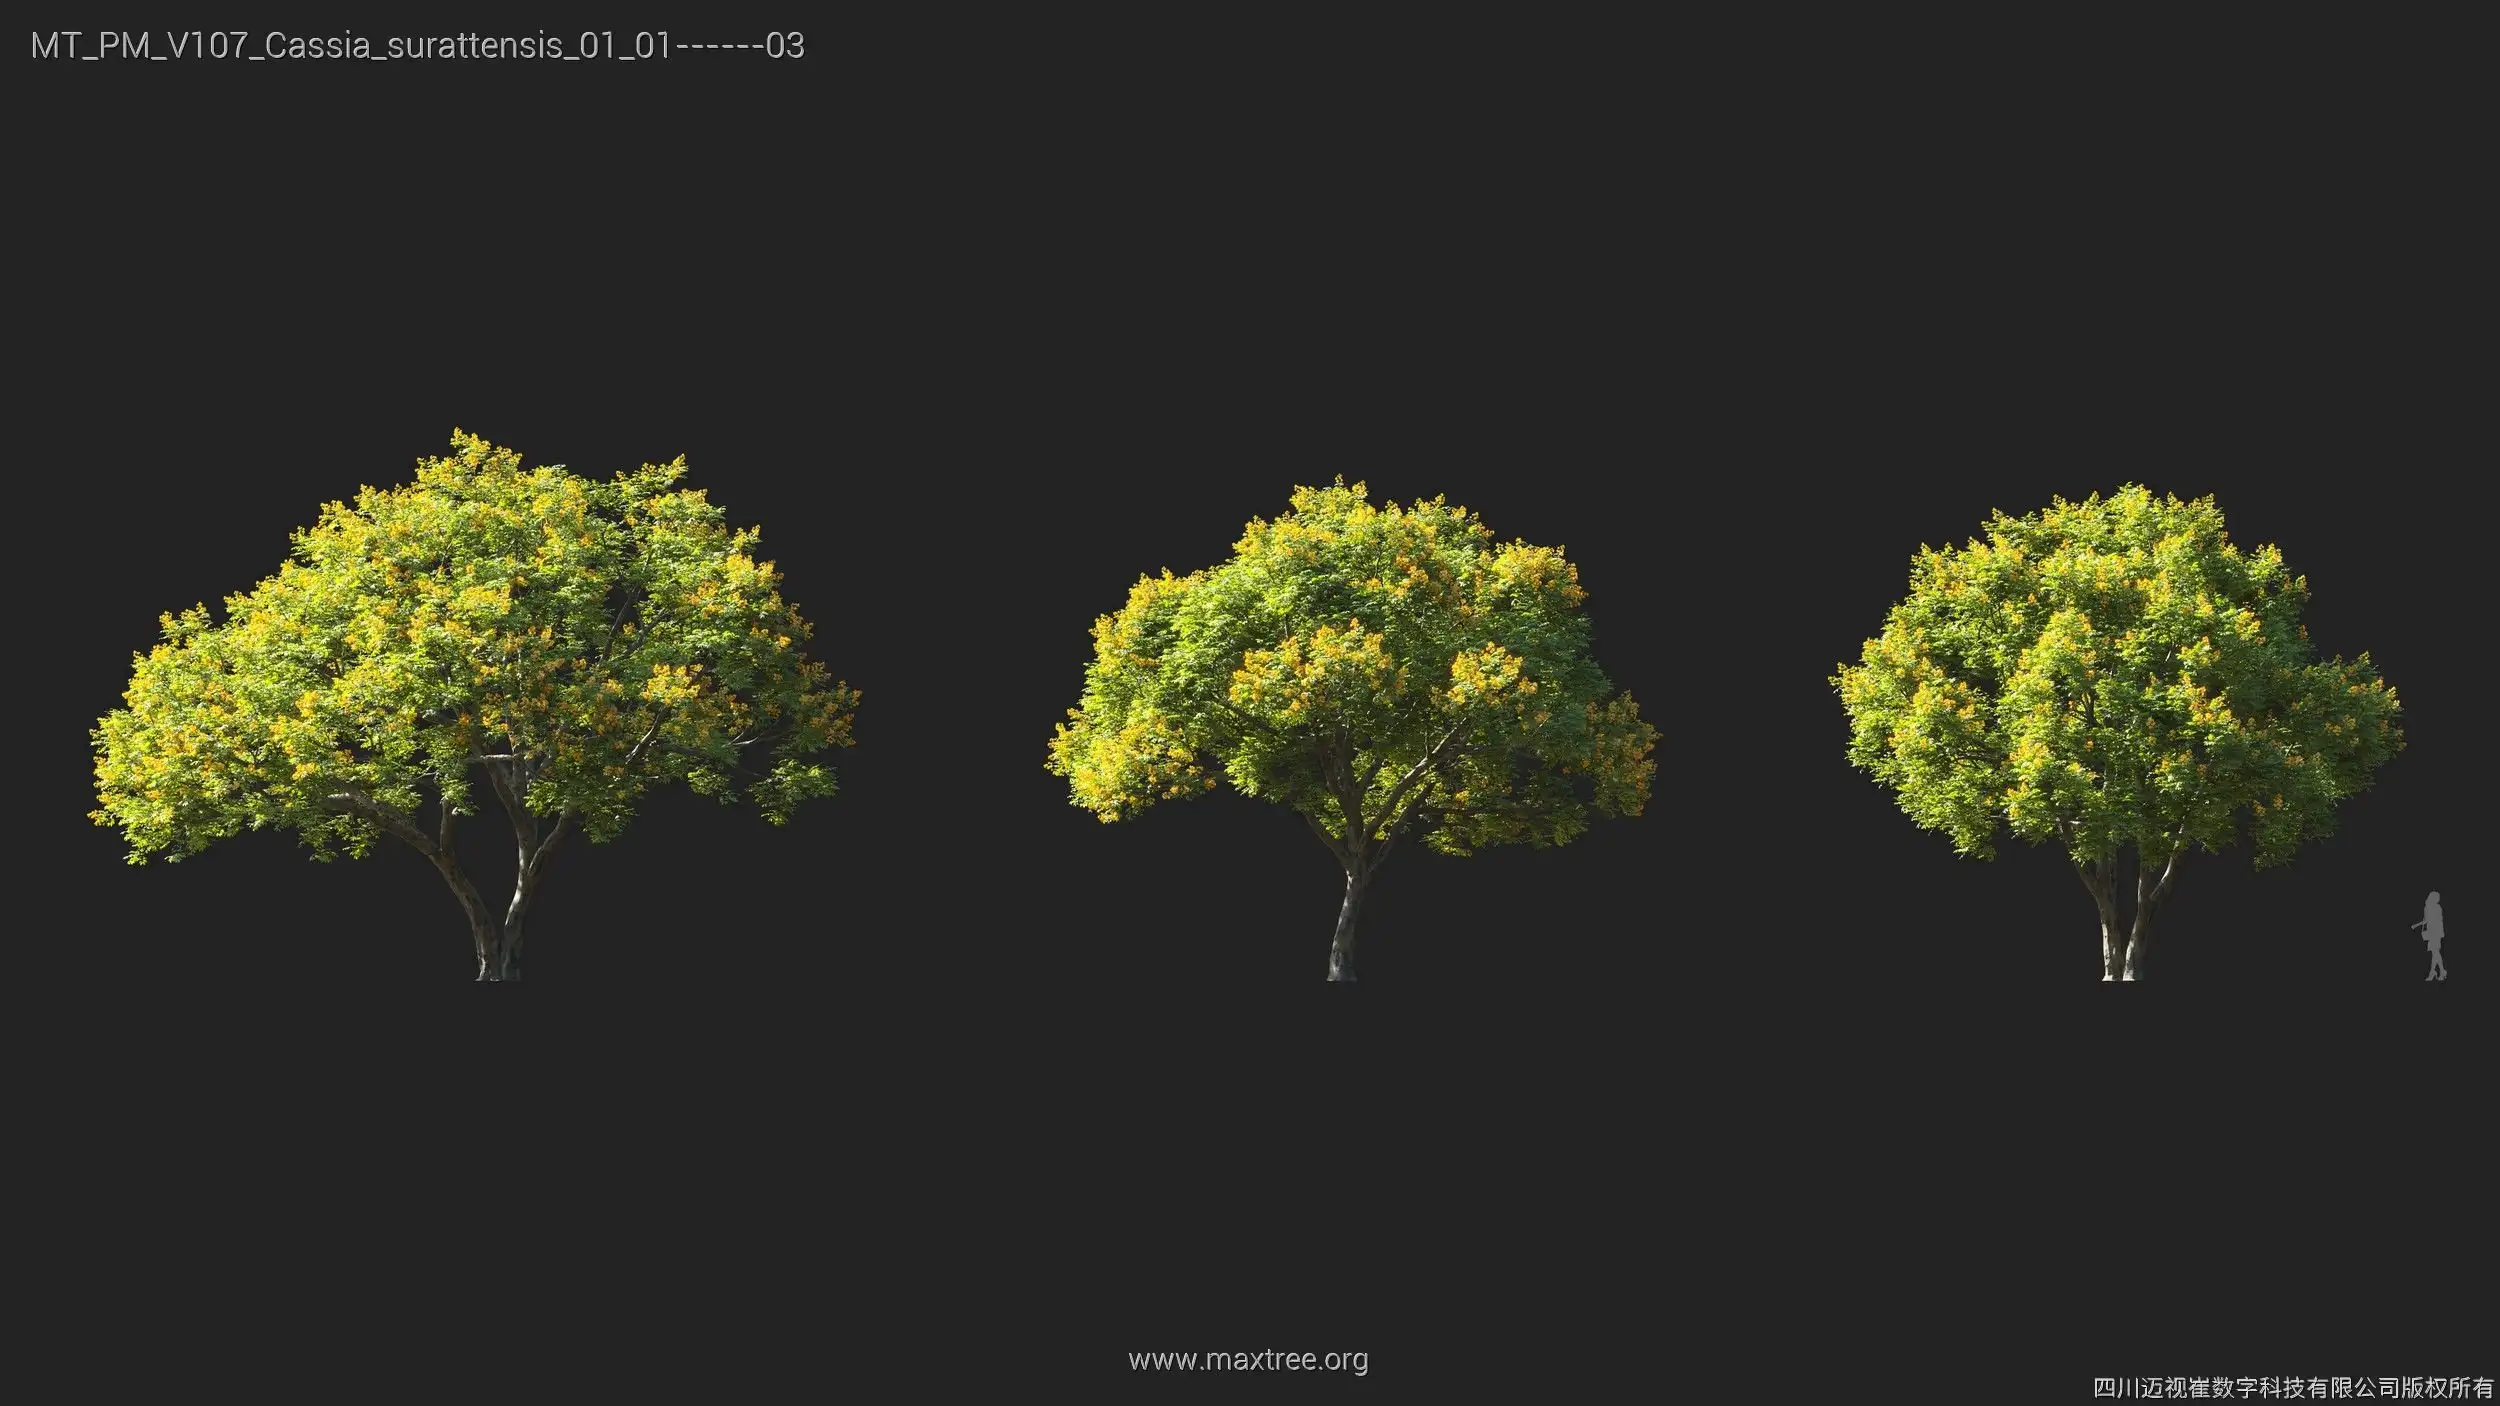 دانلود 72 مدل سه بعدی درخت - 4